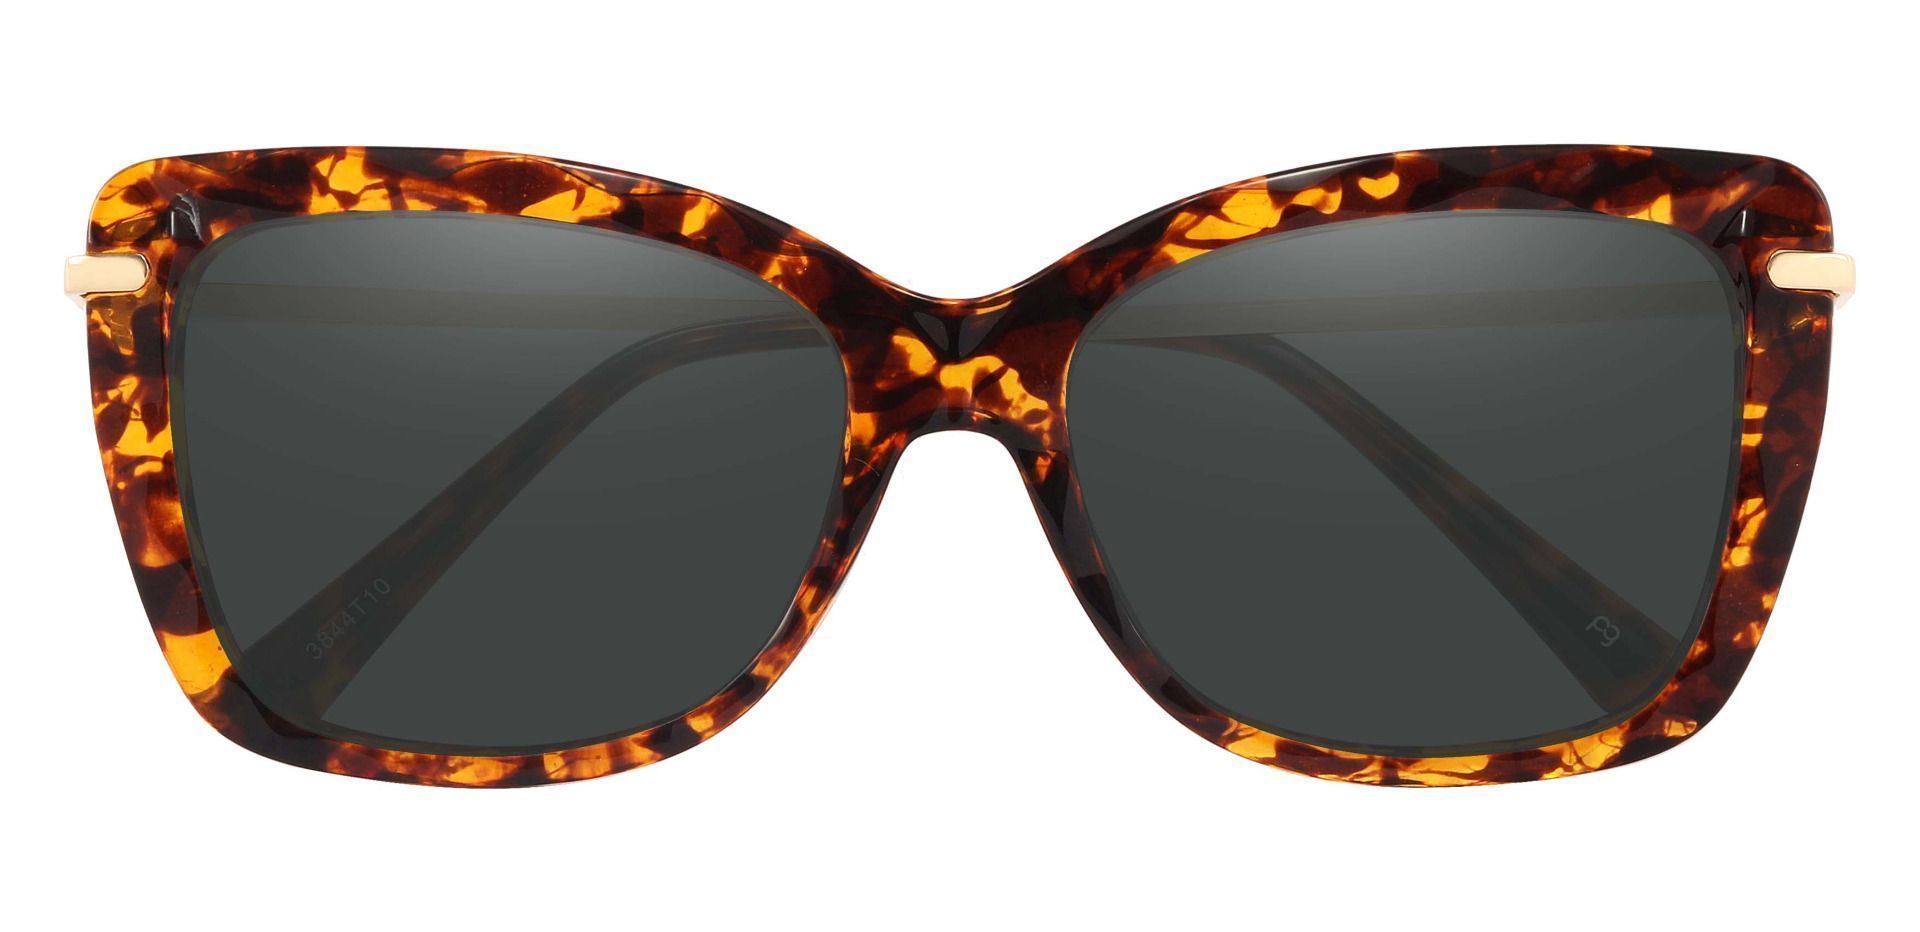 Shoshanna Rectangle Progressive Sunglasses - Tortoise Frame With Gray Lenses